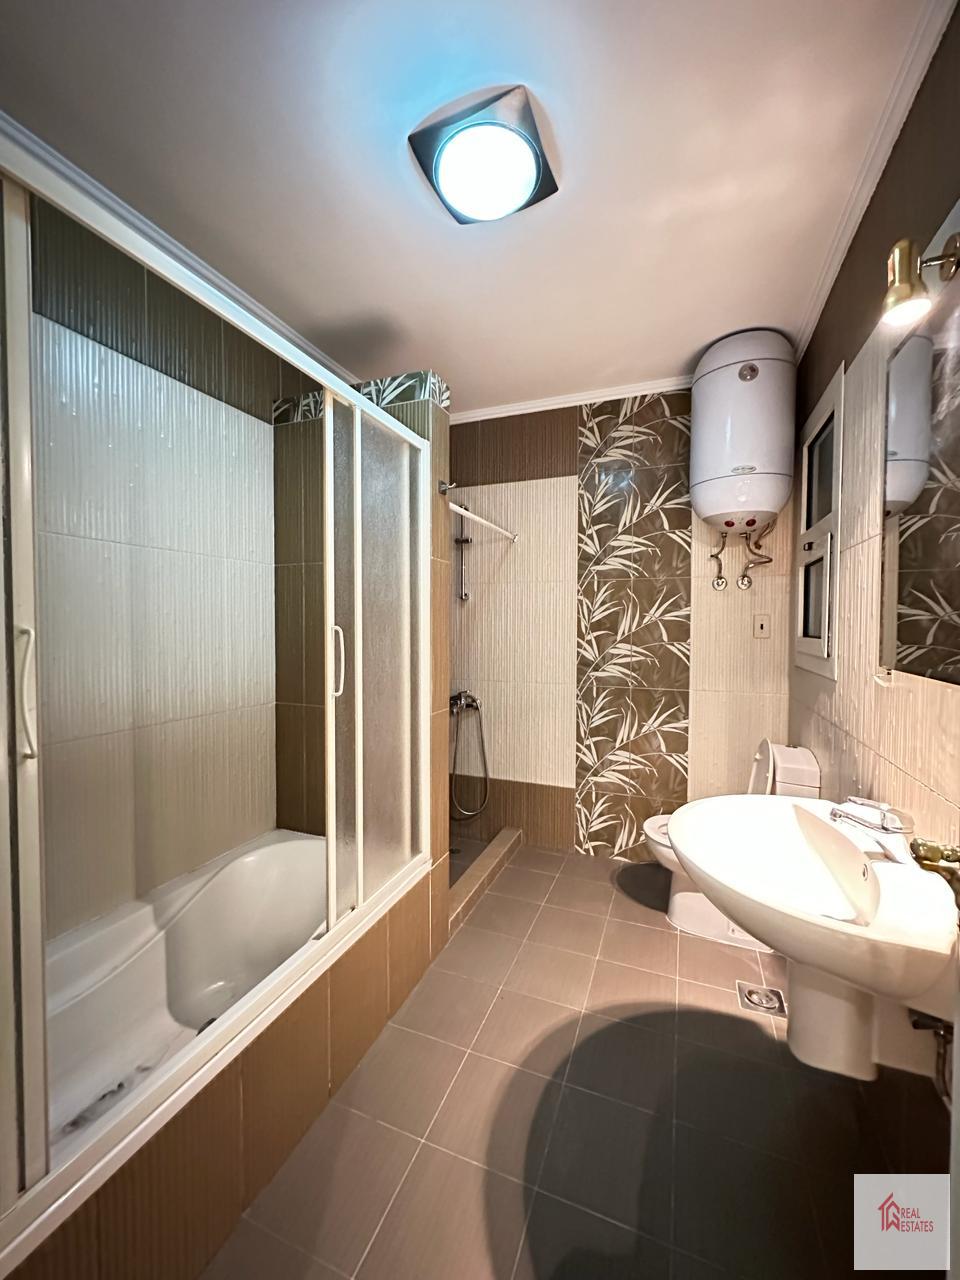 Квартира аренда продажа 300 метров 4 спальни 3 ванные комнаты